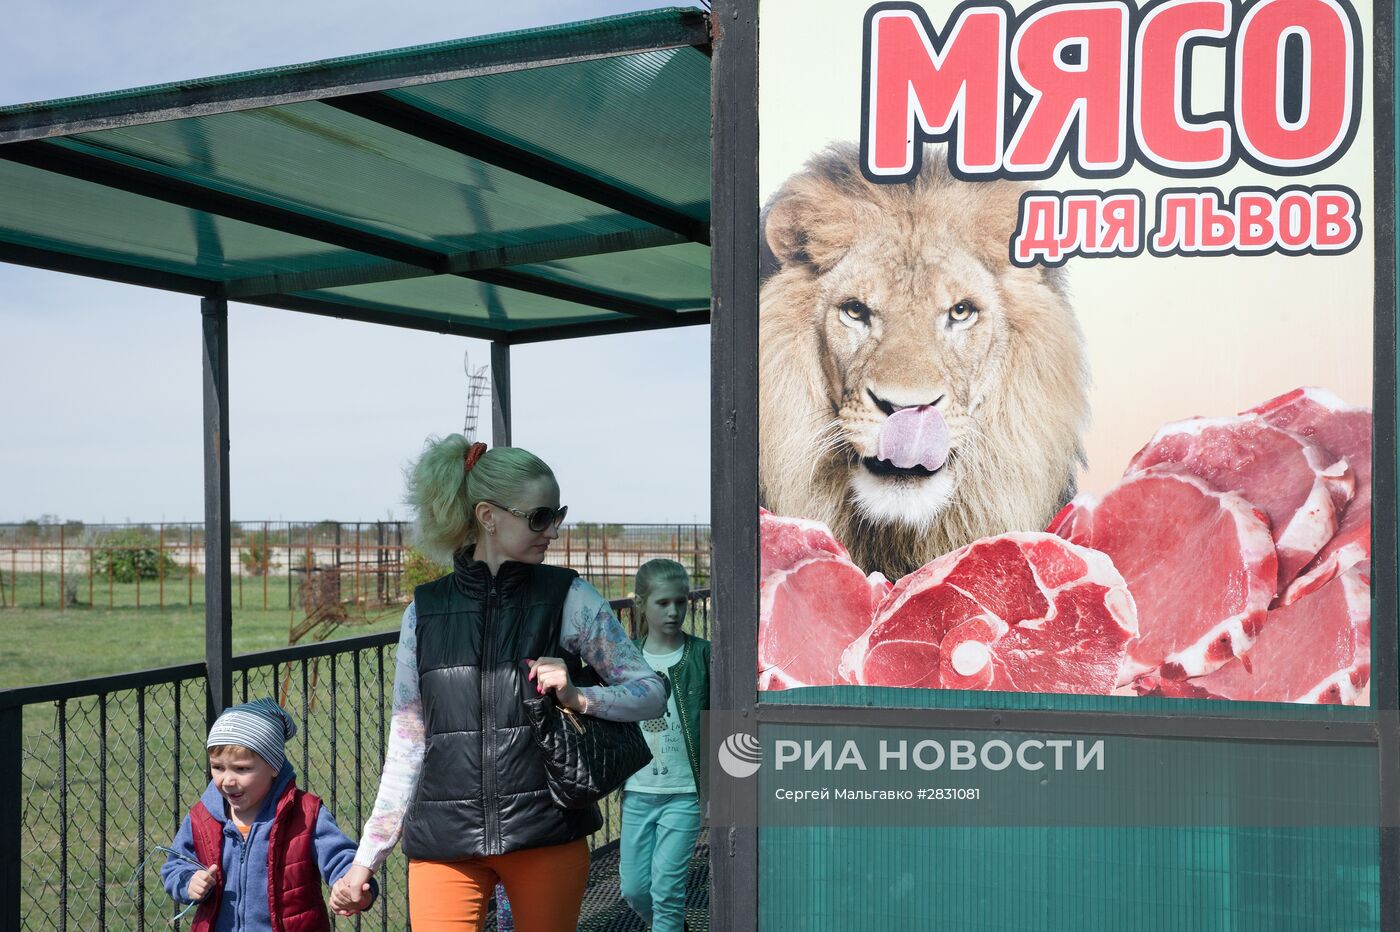 Выпуск львов в крымском сафари-парке "Тайган"